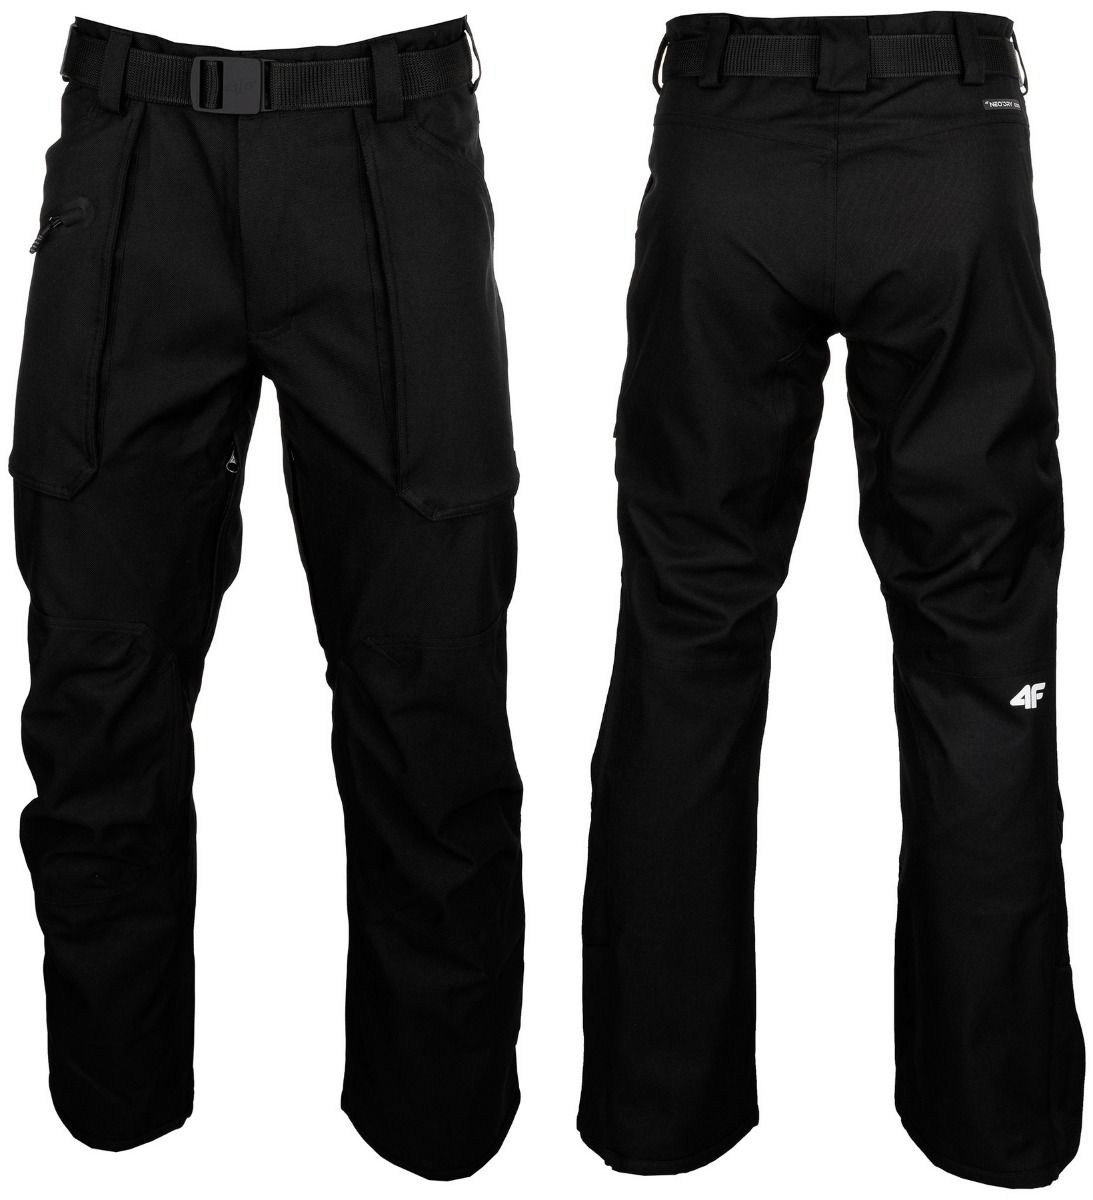 4F spodnie narciarskie męskie H4Z20 SPMN002 20S